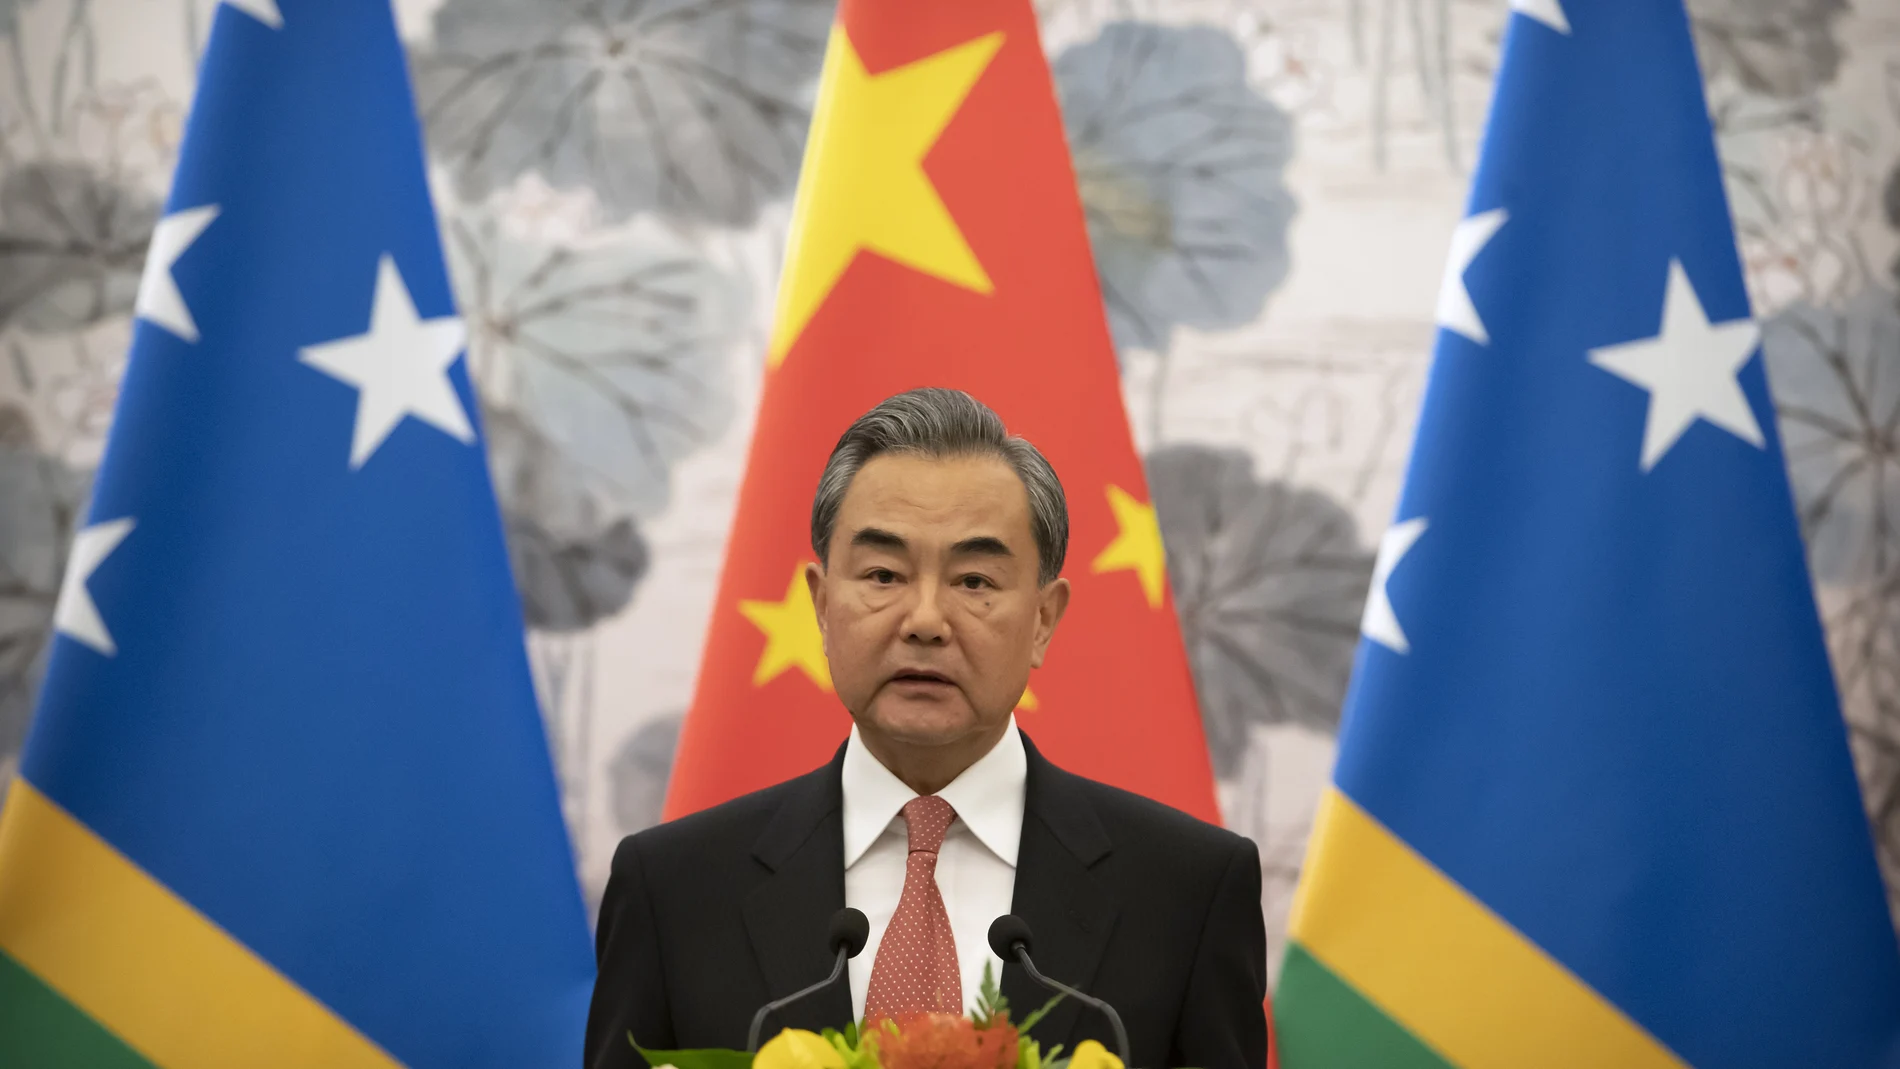 La gira del canciller chino, Wang Yi, por las islas del Pacífico, con las que busca firmar un pacto económico y de seguridad, continúa avivando tensiones: